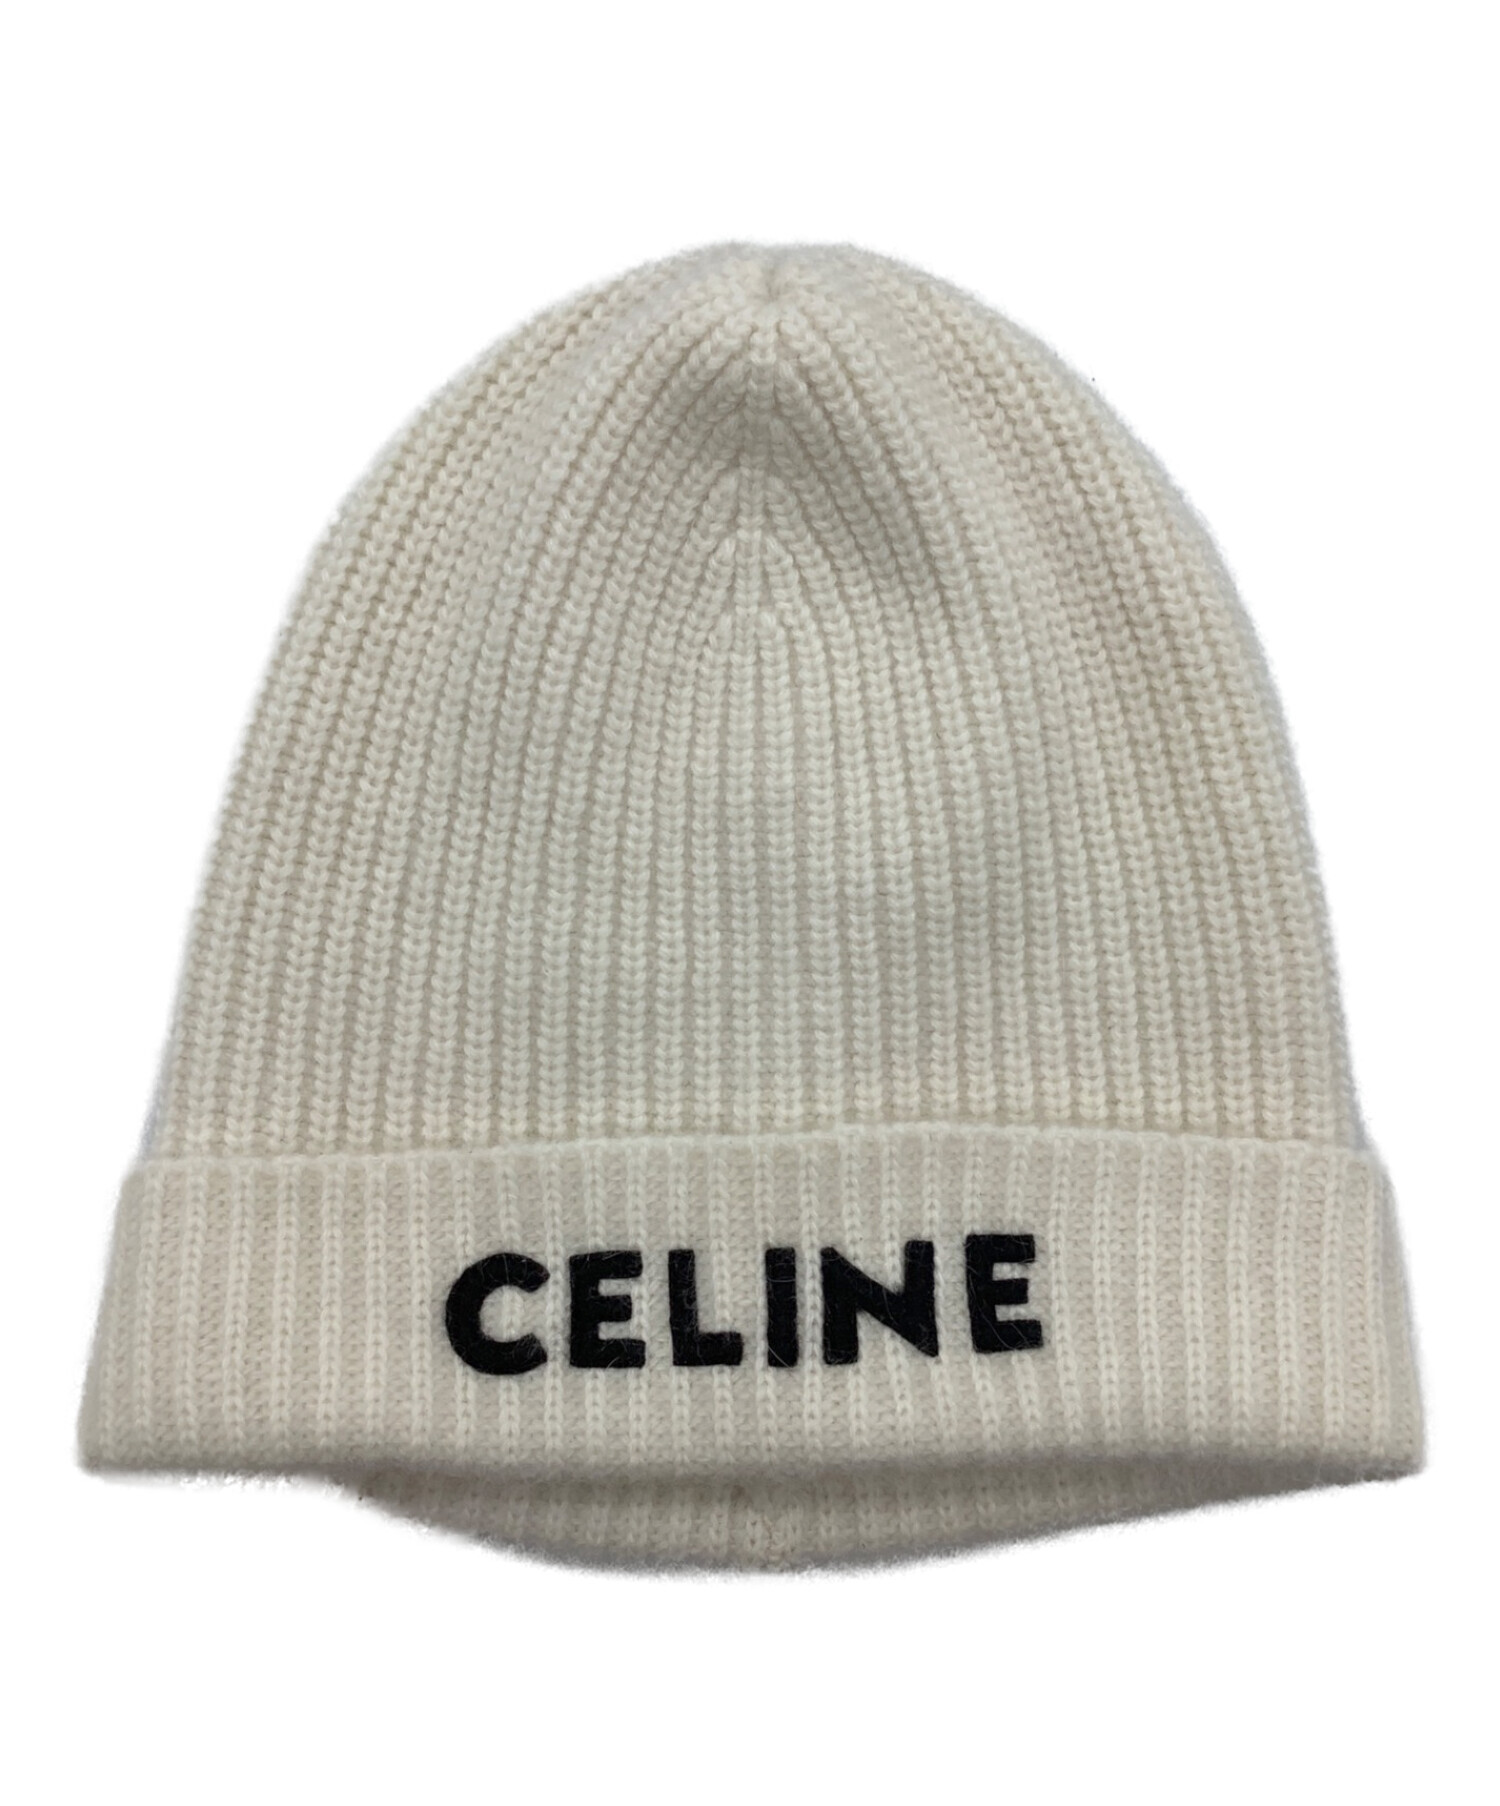 CELINE (セリーヌ) ロゴニット帽 アイボリー サイズ:TU